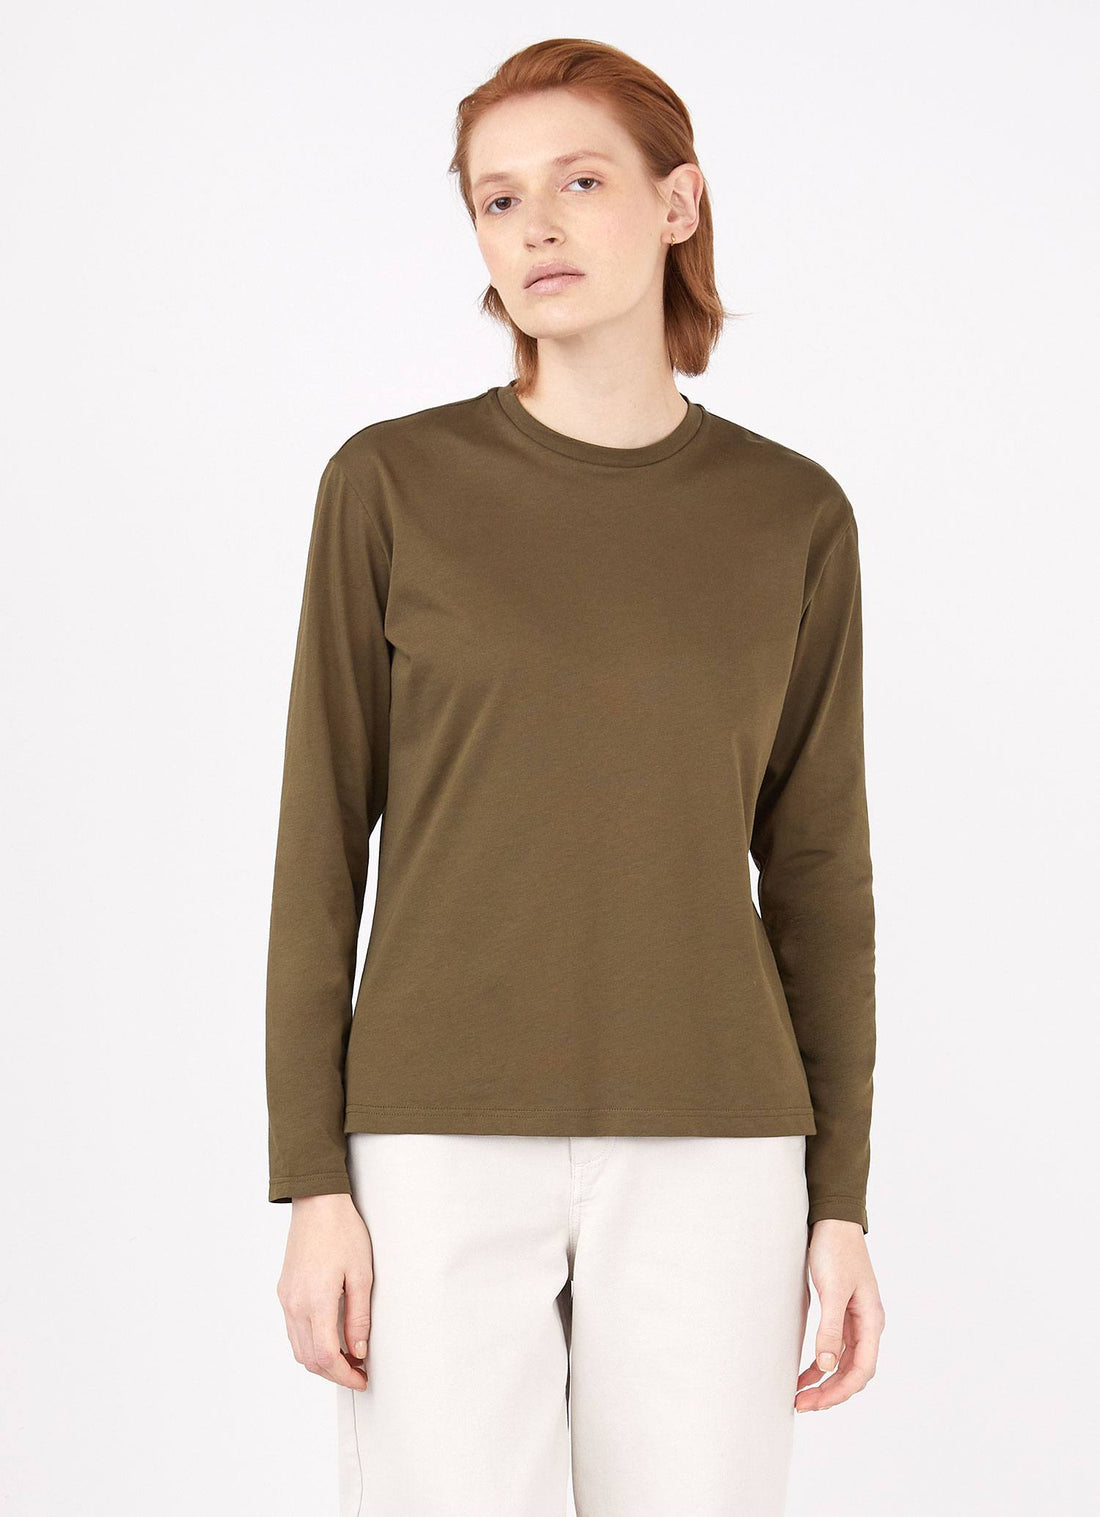 Women's Long Sleeve Boy Fit T-shirt in Dark Moss